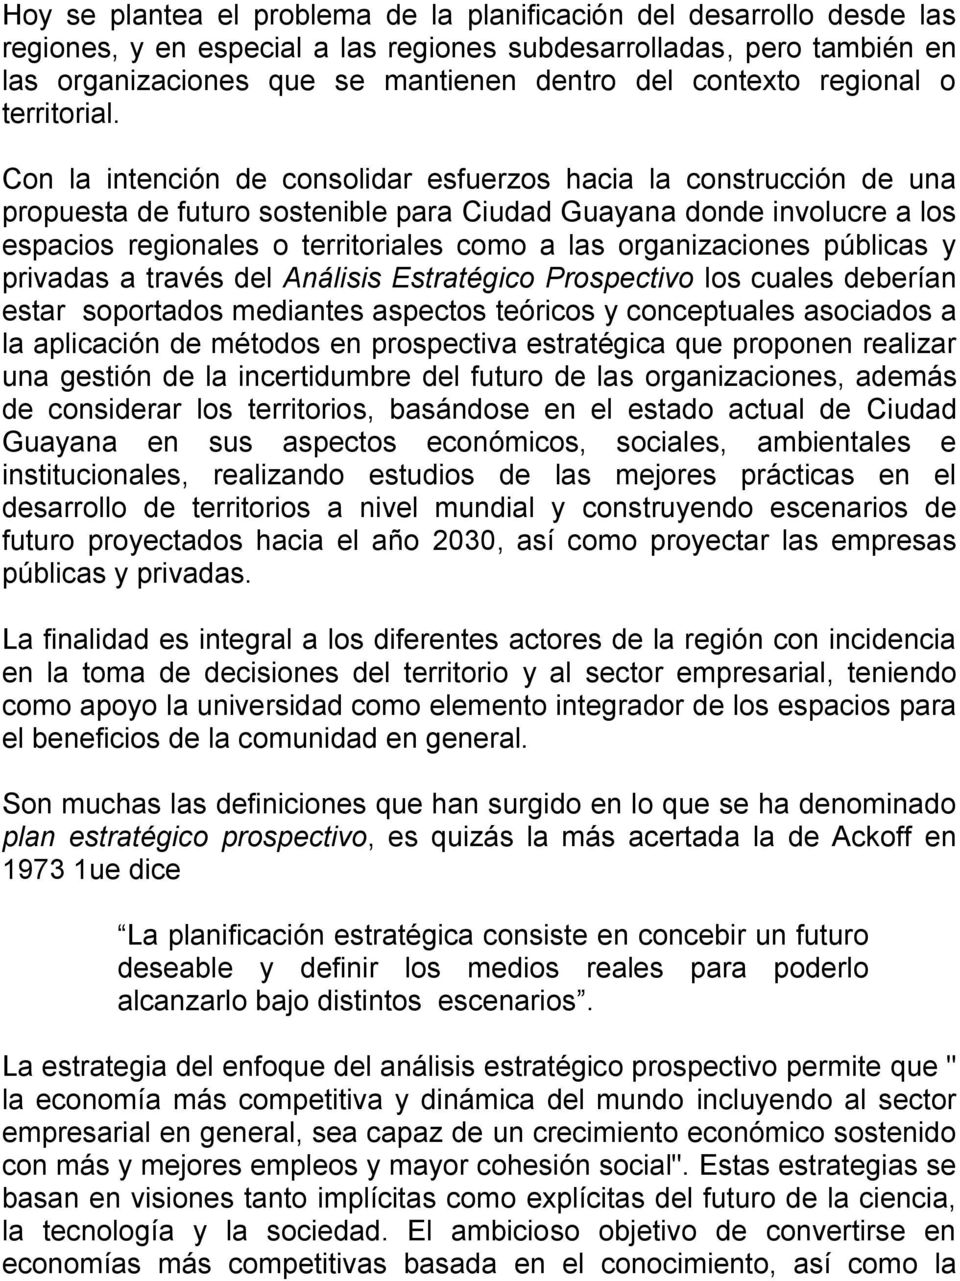 Con la intención de consolidar esfuerzos hacia la construcción de una propuesta de futuro sostenible para Ciudad Guayana donde involucre a los espacios regionales o territoriales como a las